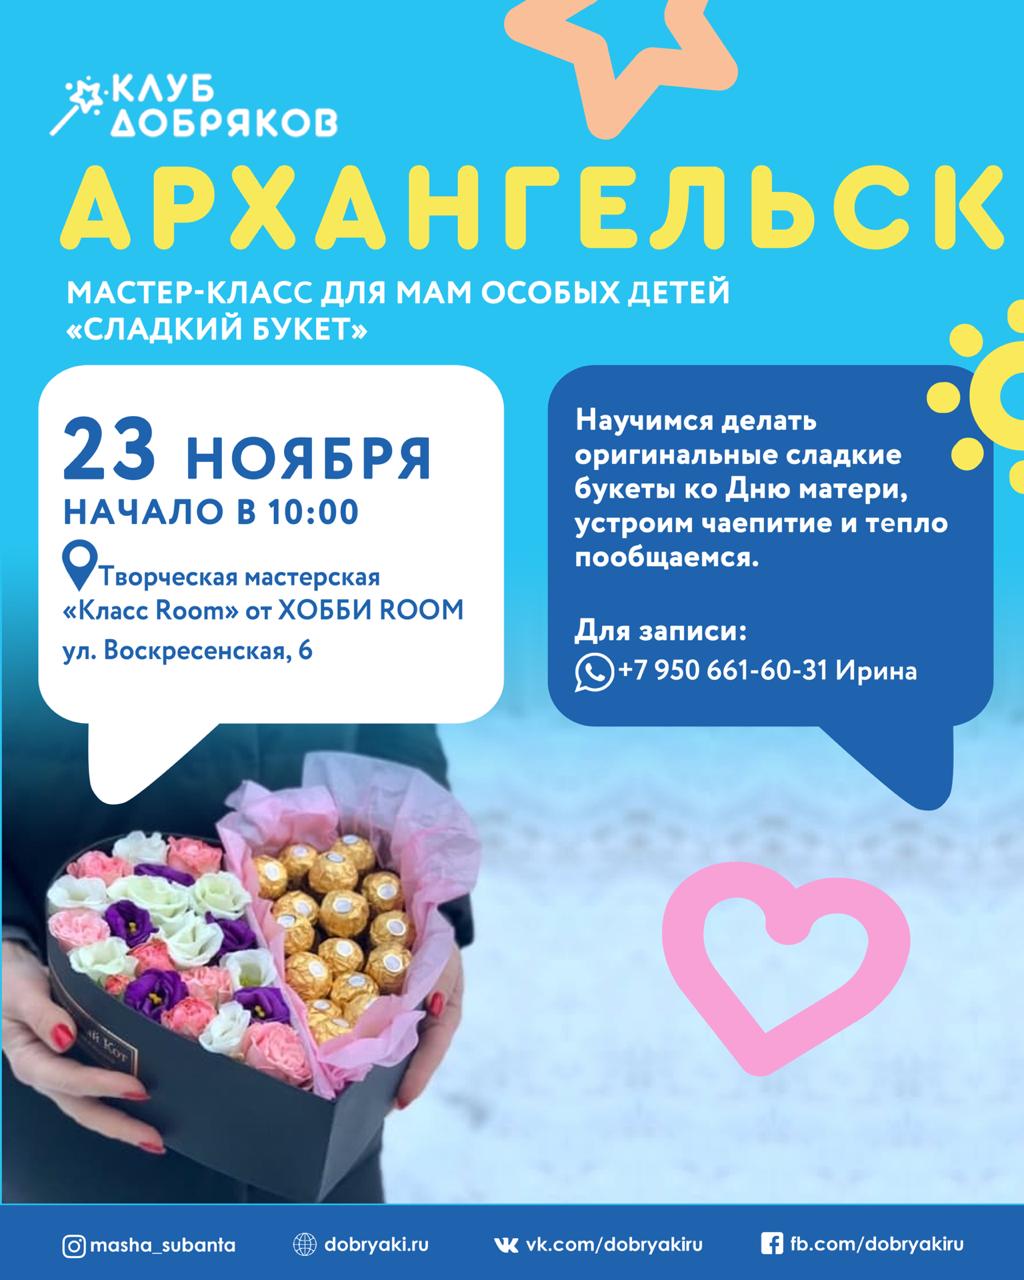 Добряки Архангельска поздравят мам особенных детей сладкими букетами